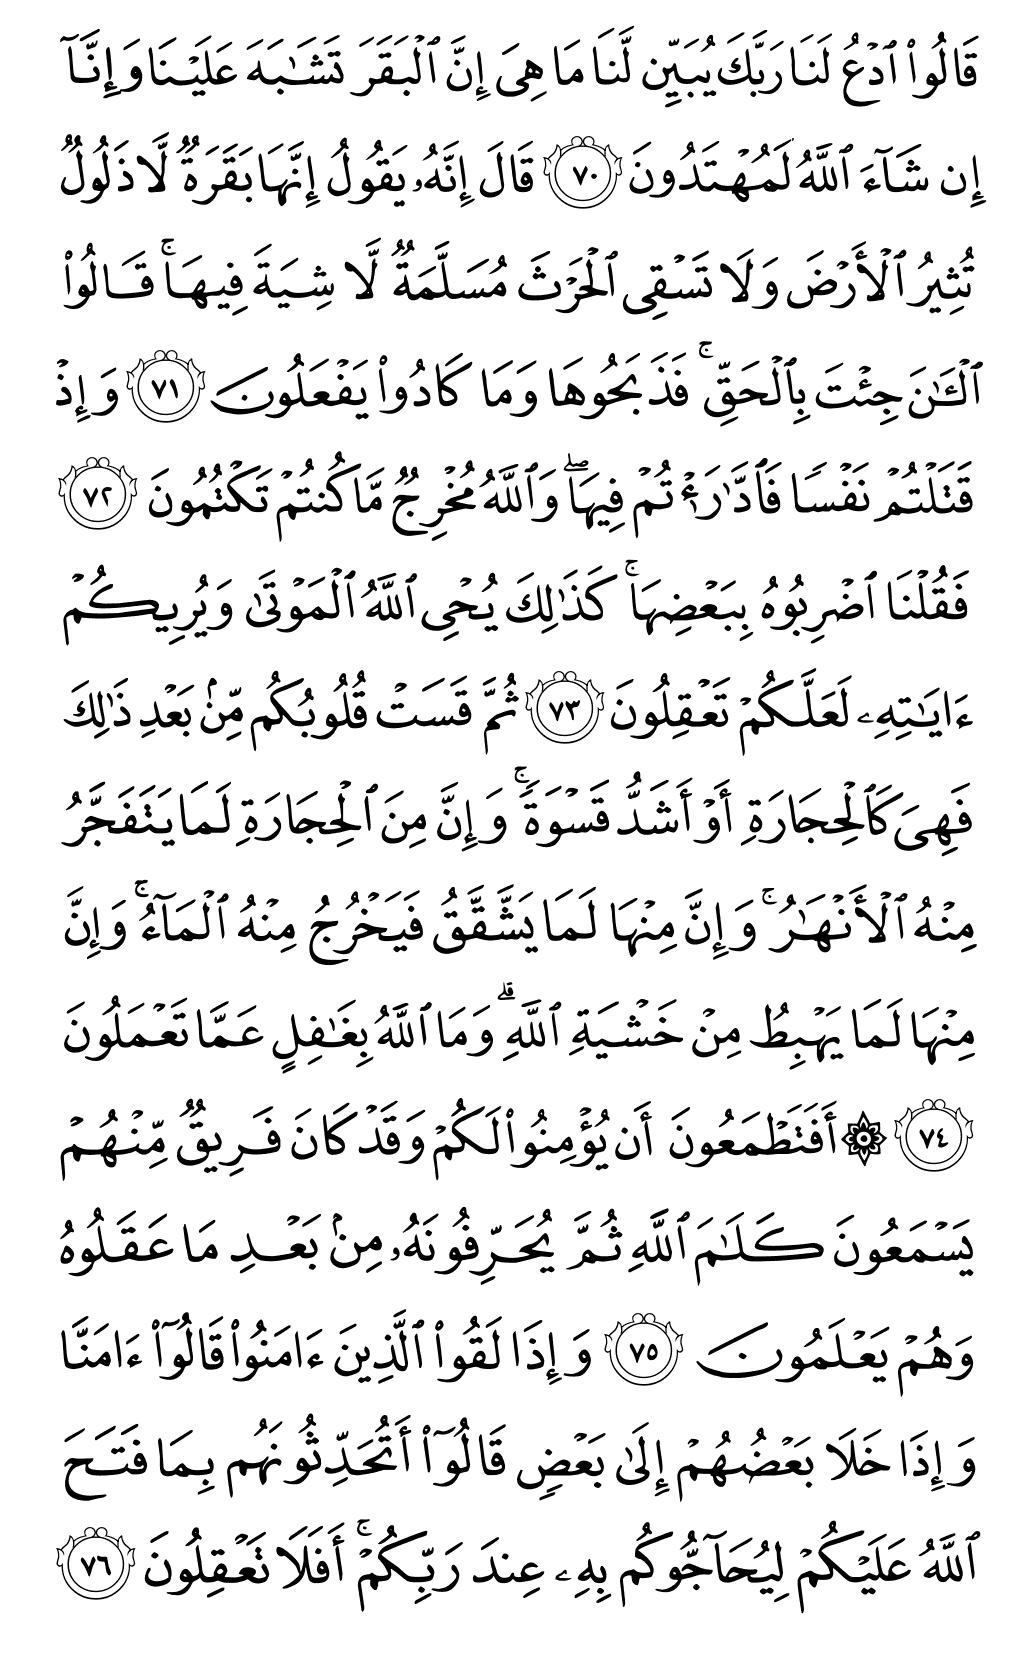 الصفحة رقم 11 من القرآن الكريم